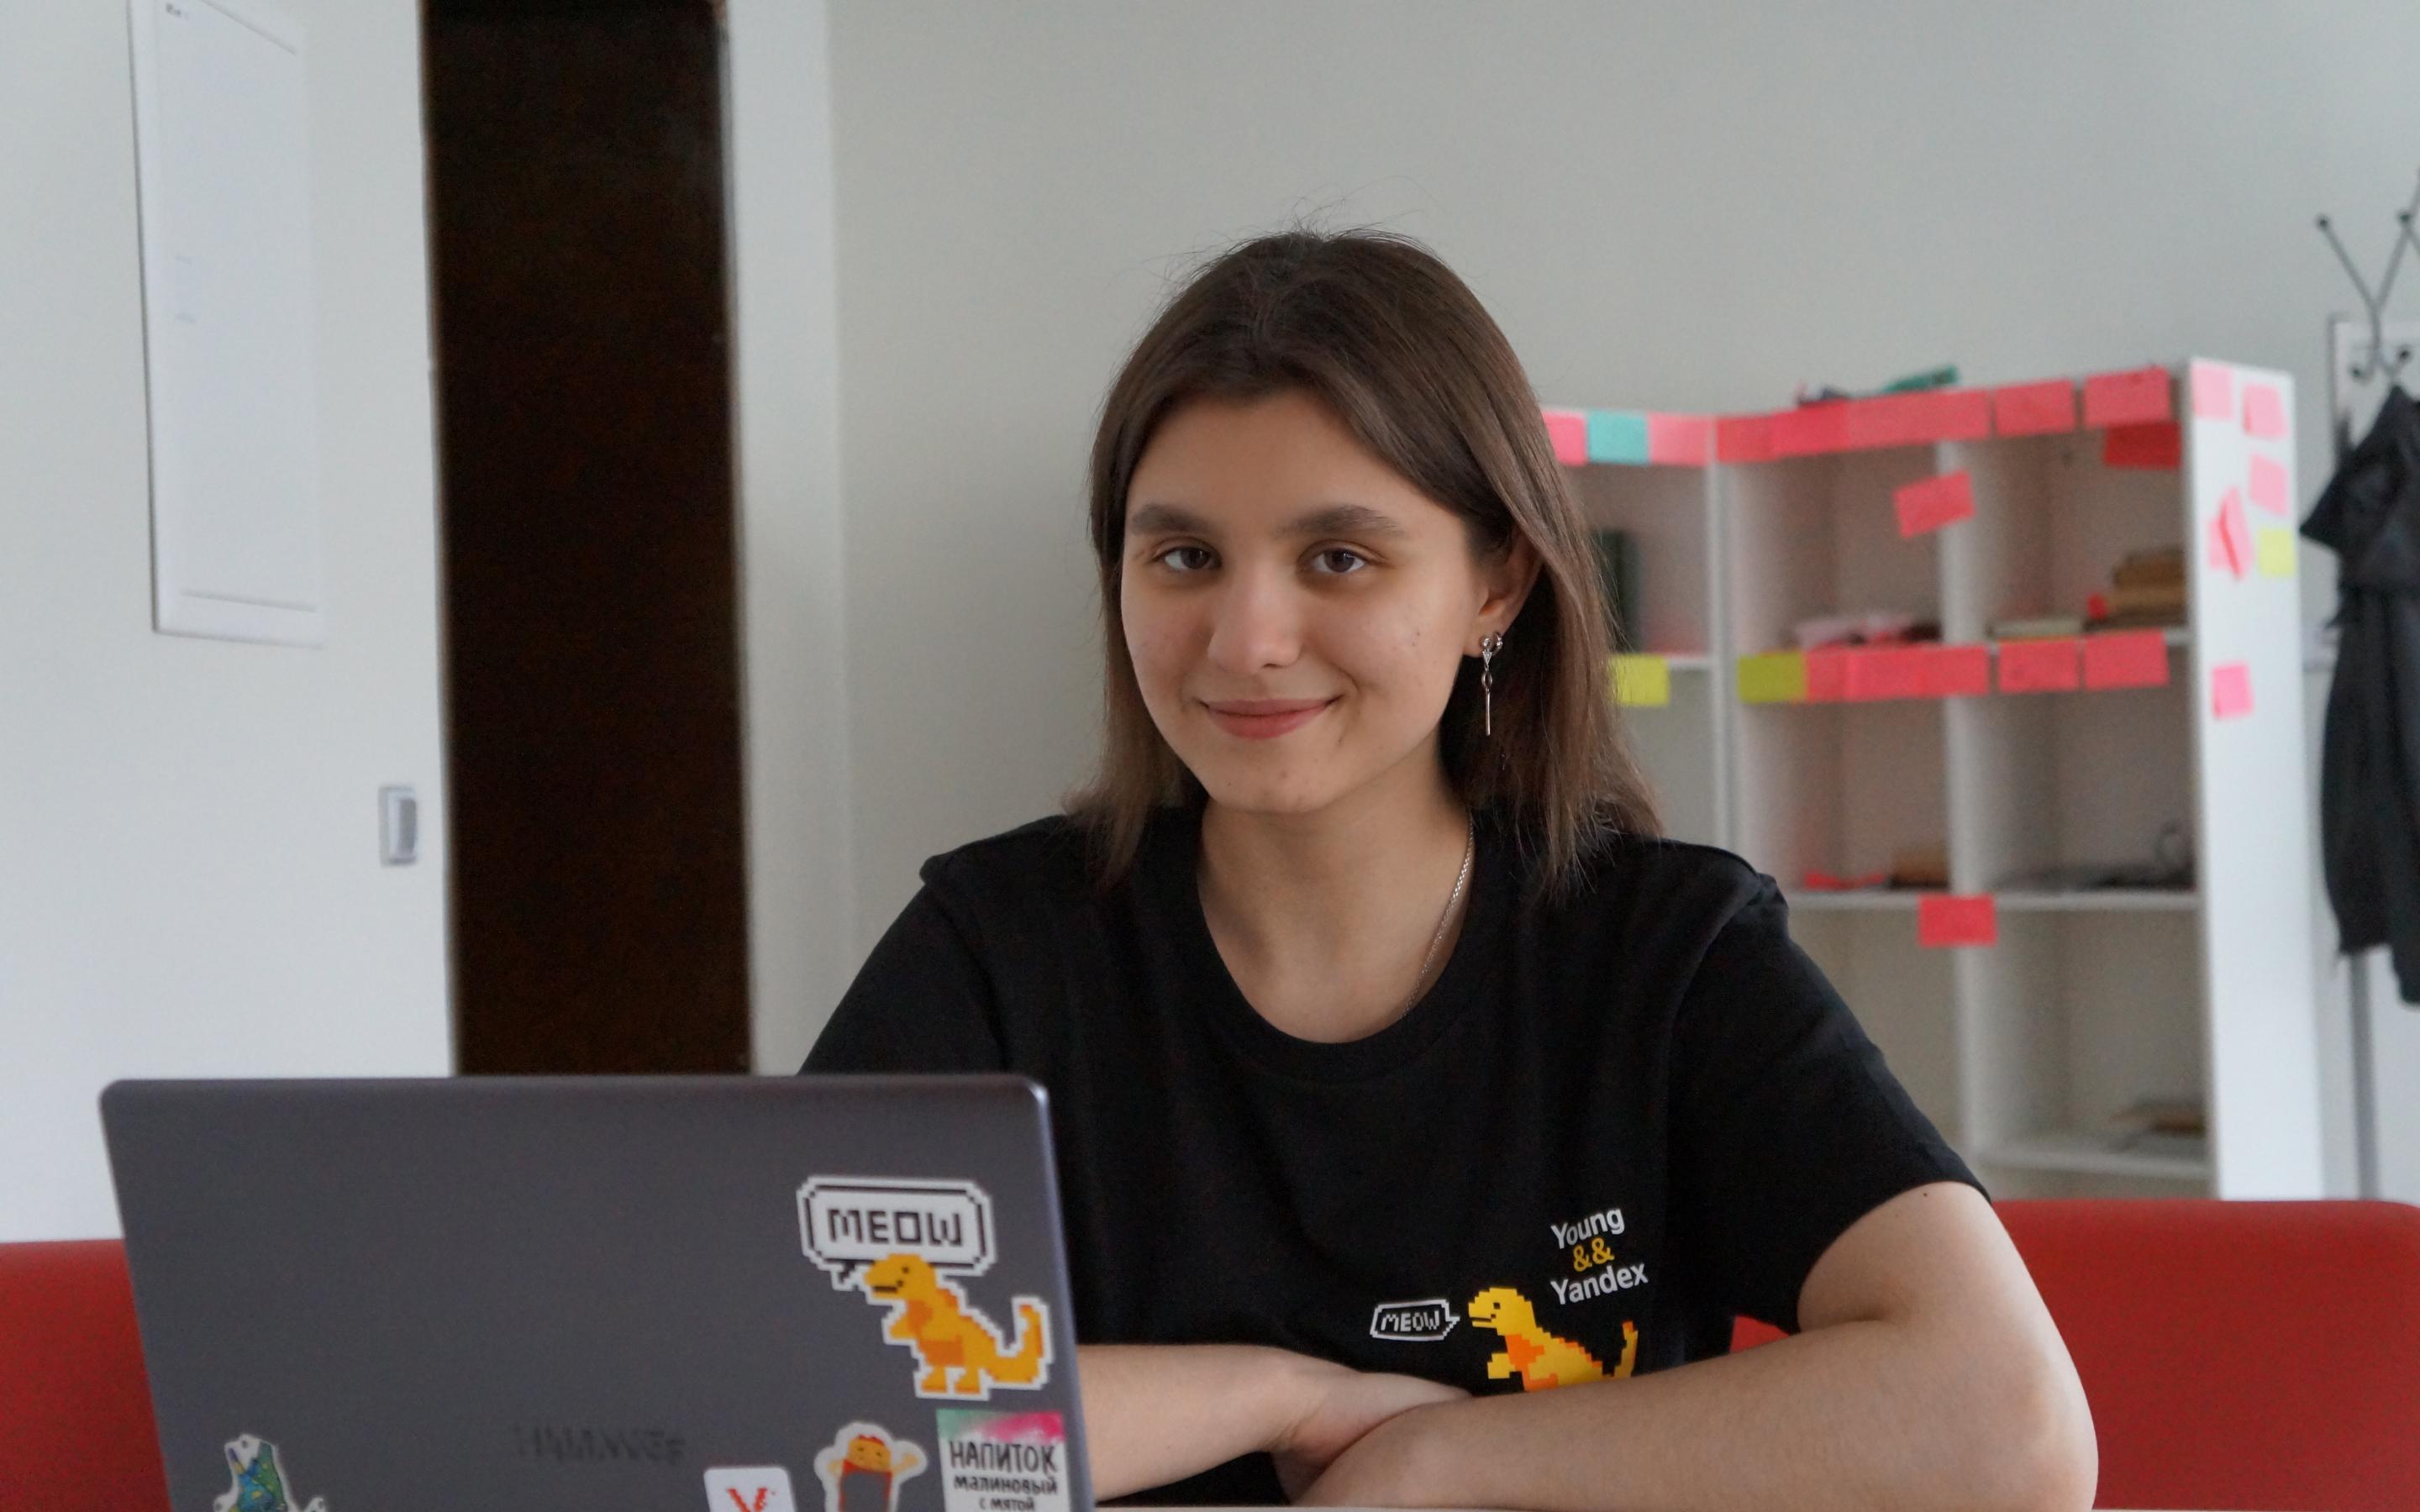 Студентка из Старого Оскола стала первым амбассадором Яндекс в МАИ